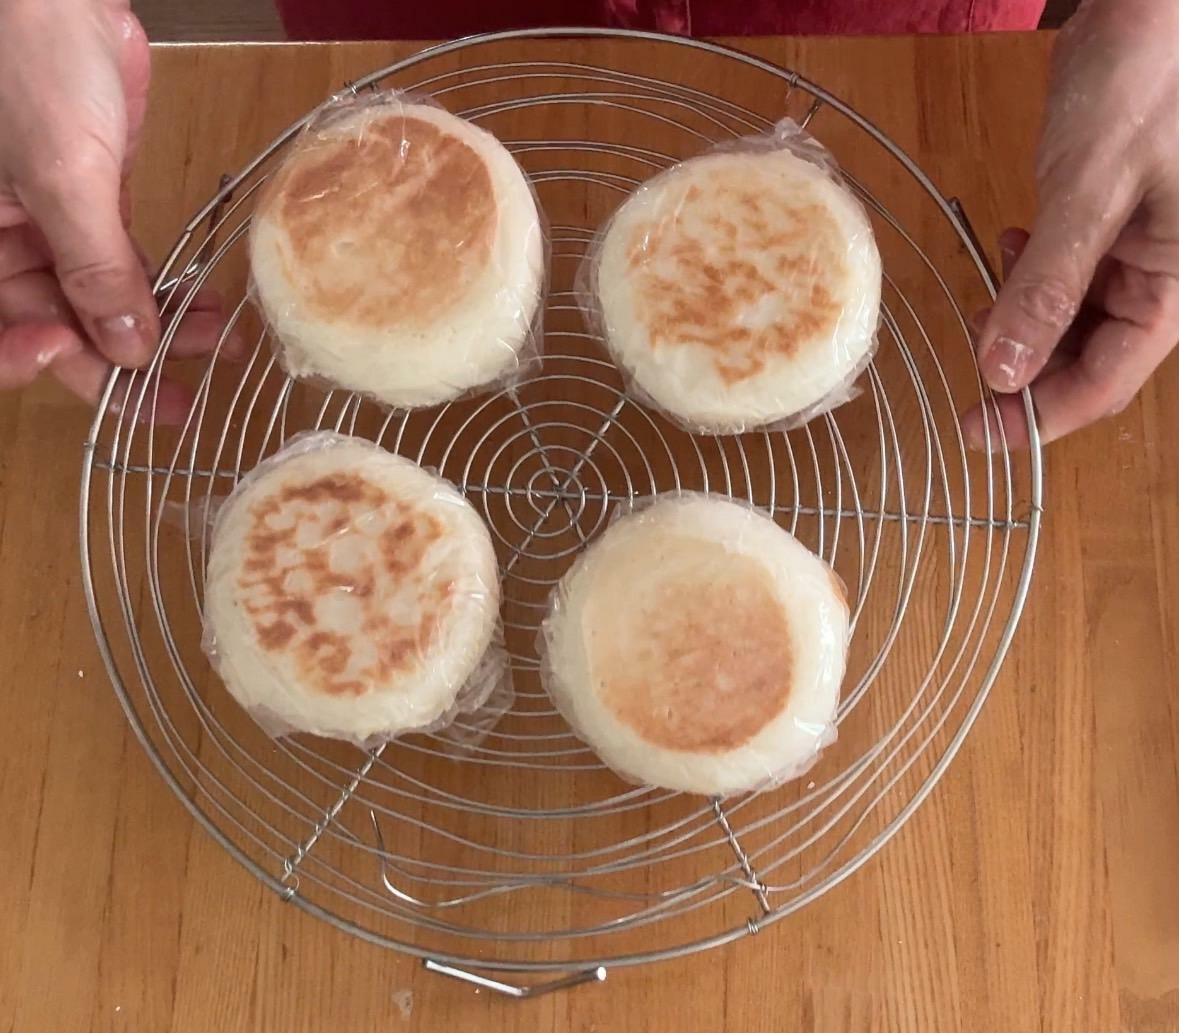 少し熱いうちにラップすると米粉パンの湯気がパンの表面に付きふっくらソフトになります。